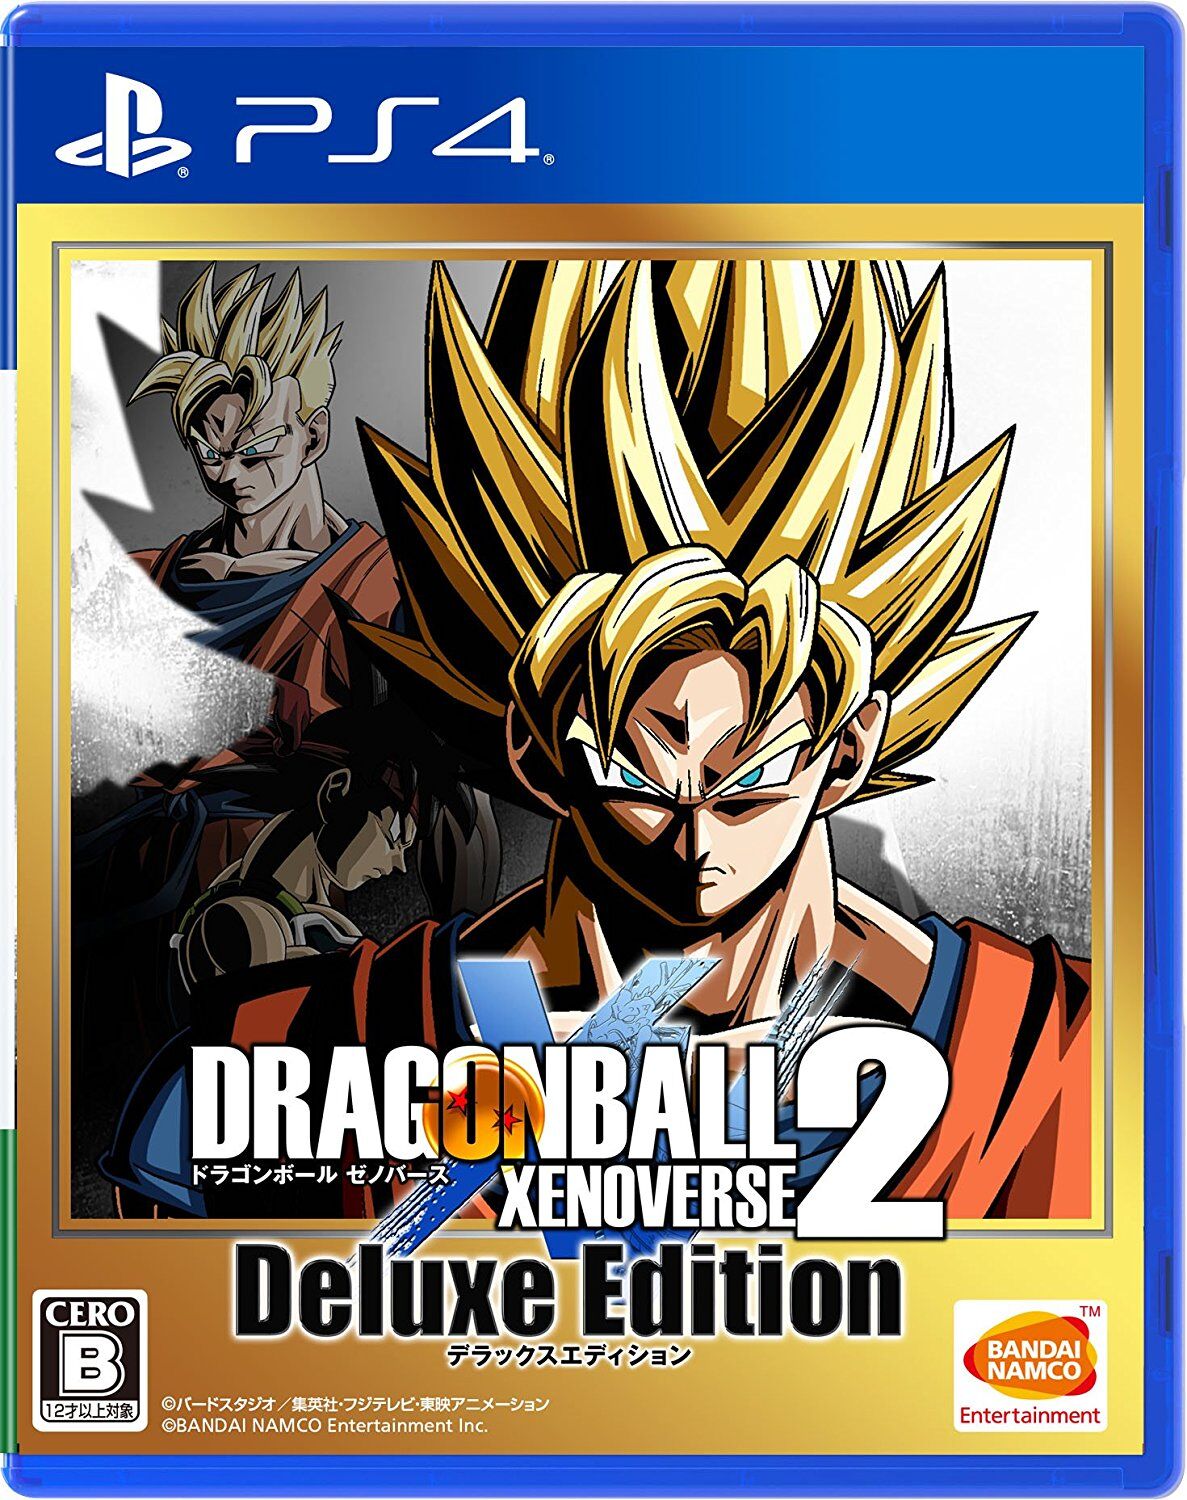 New Dragon Ball Xenoverse 2 DLC Out Now - GameSpot